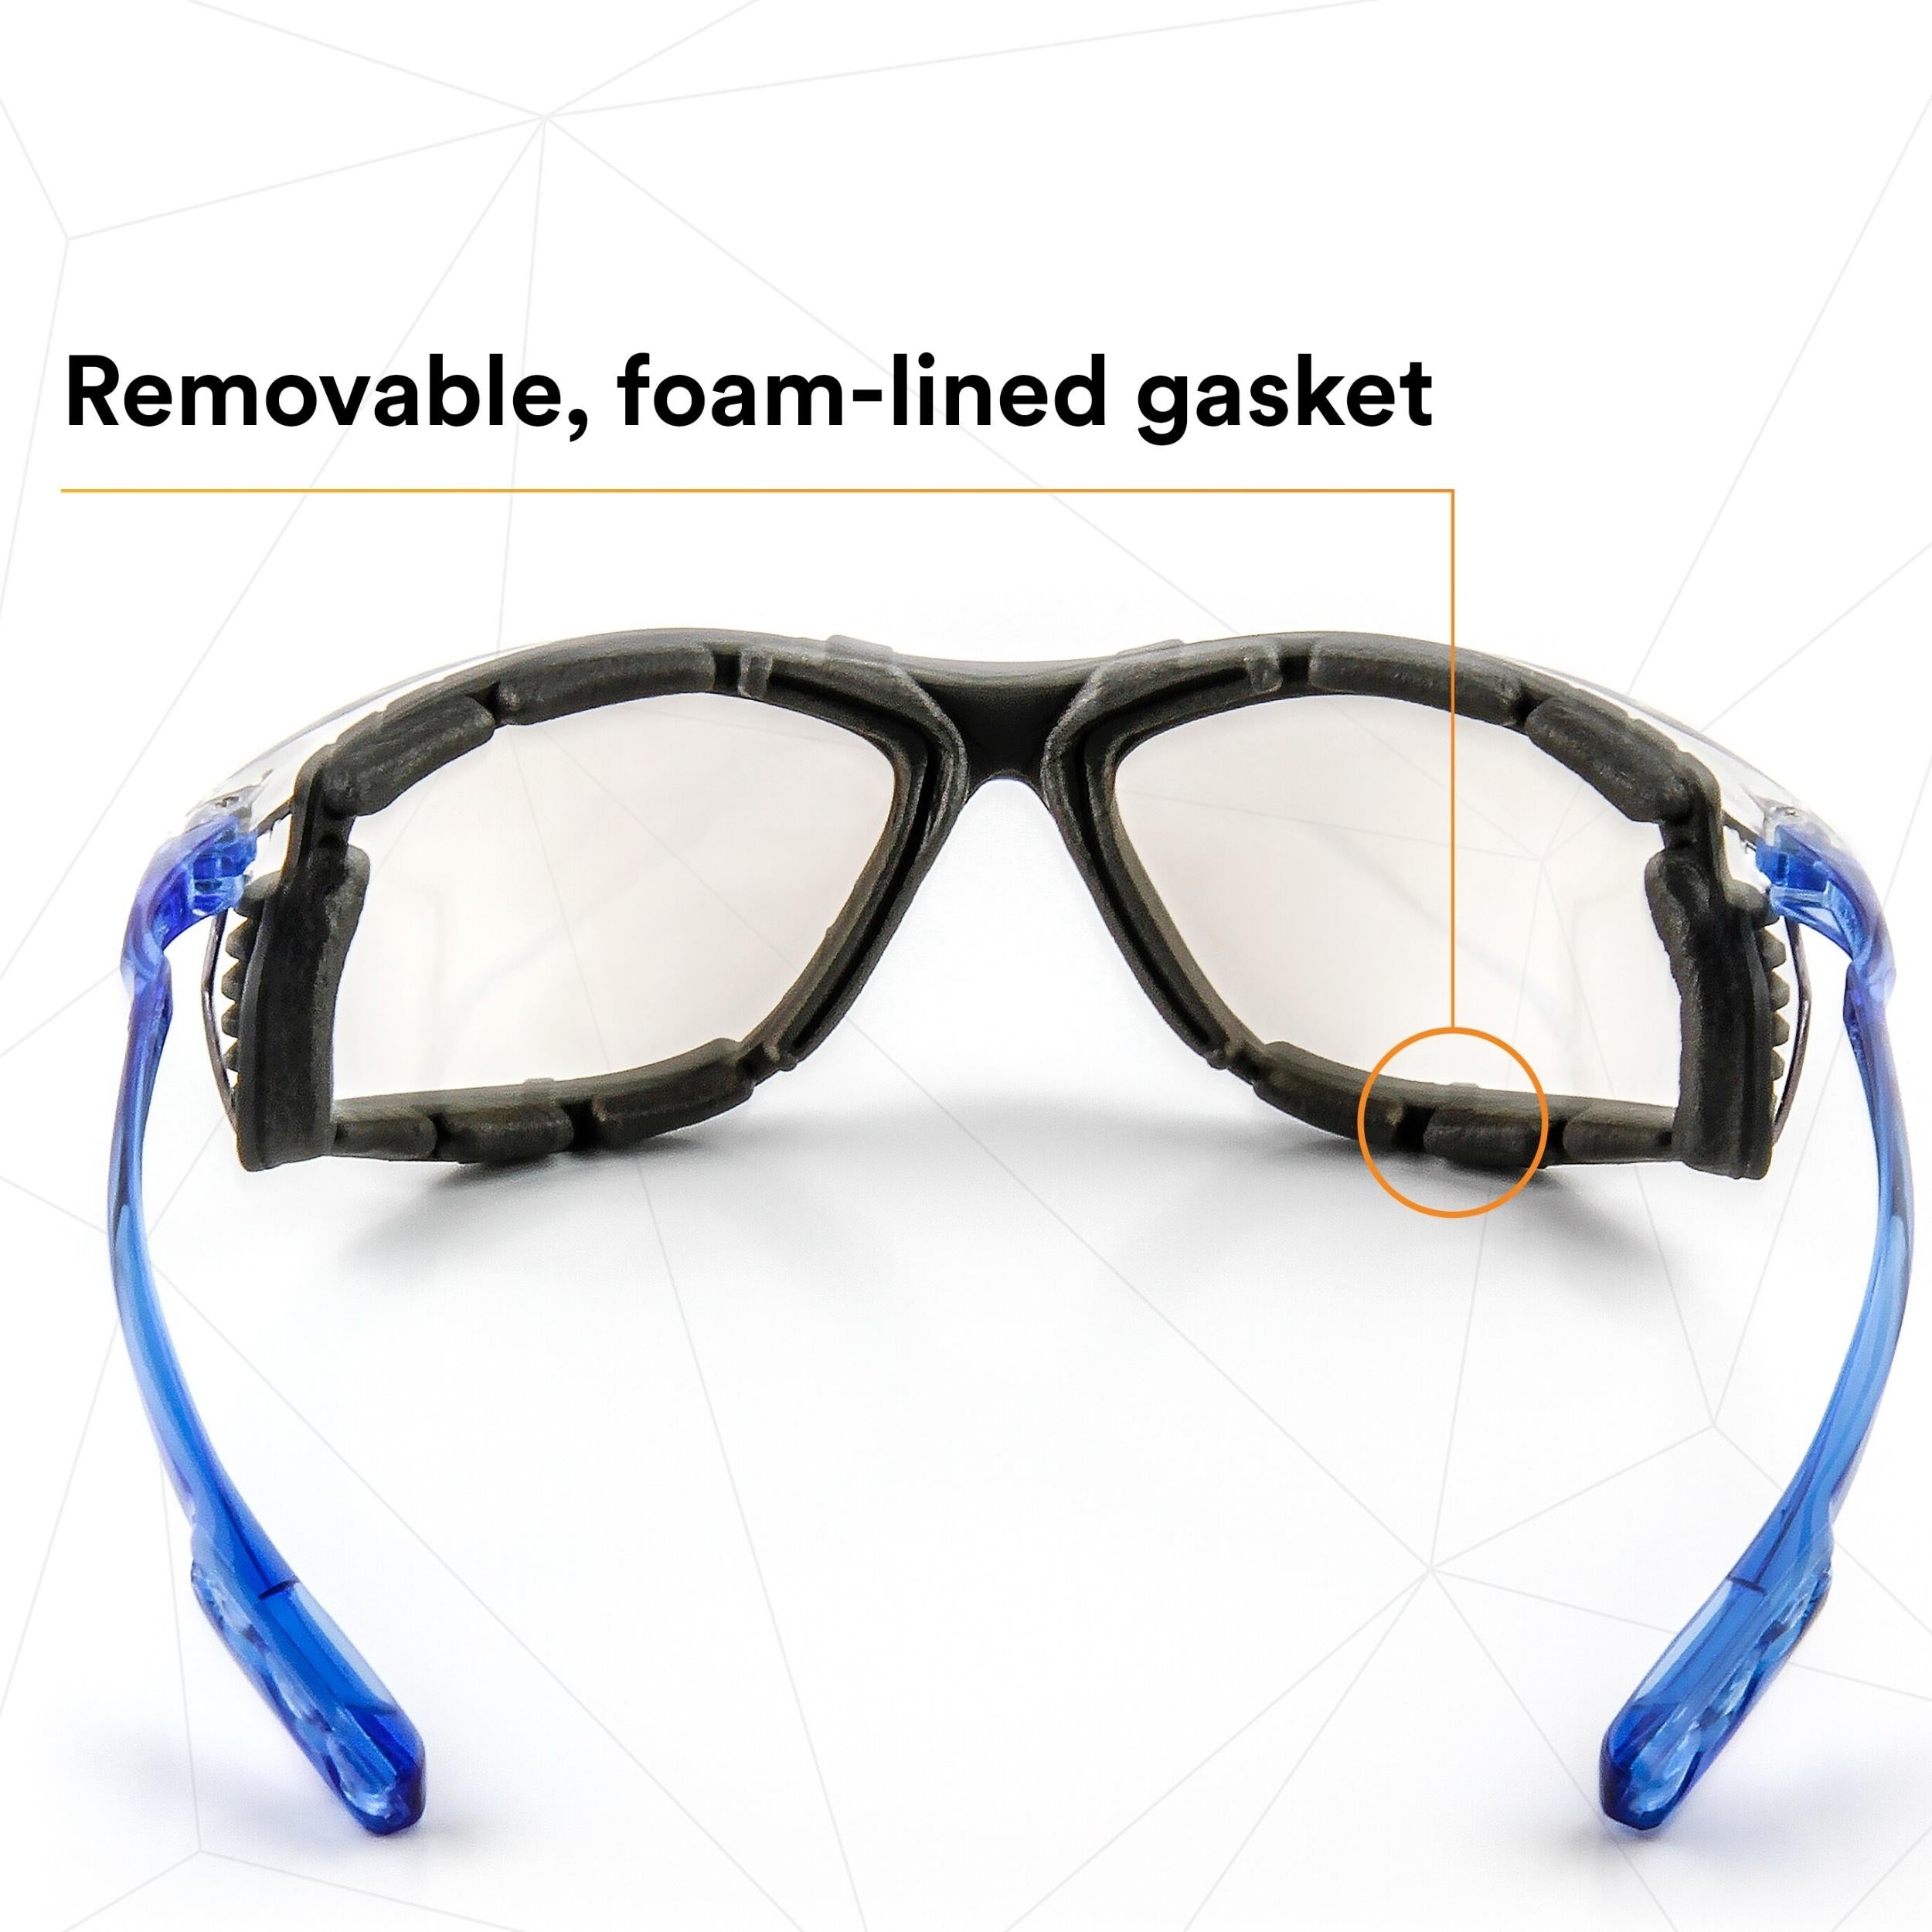 3M™ Virtua™ CCS Protective Eyewear 11874-00000 , with Foam Gasket, I/O Mir Anti-Fog Lens